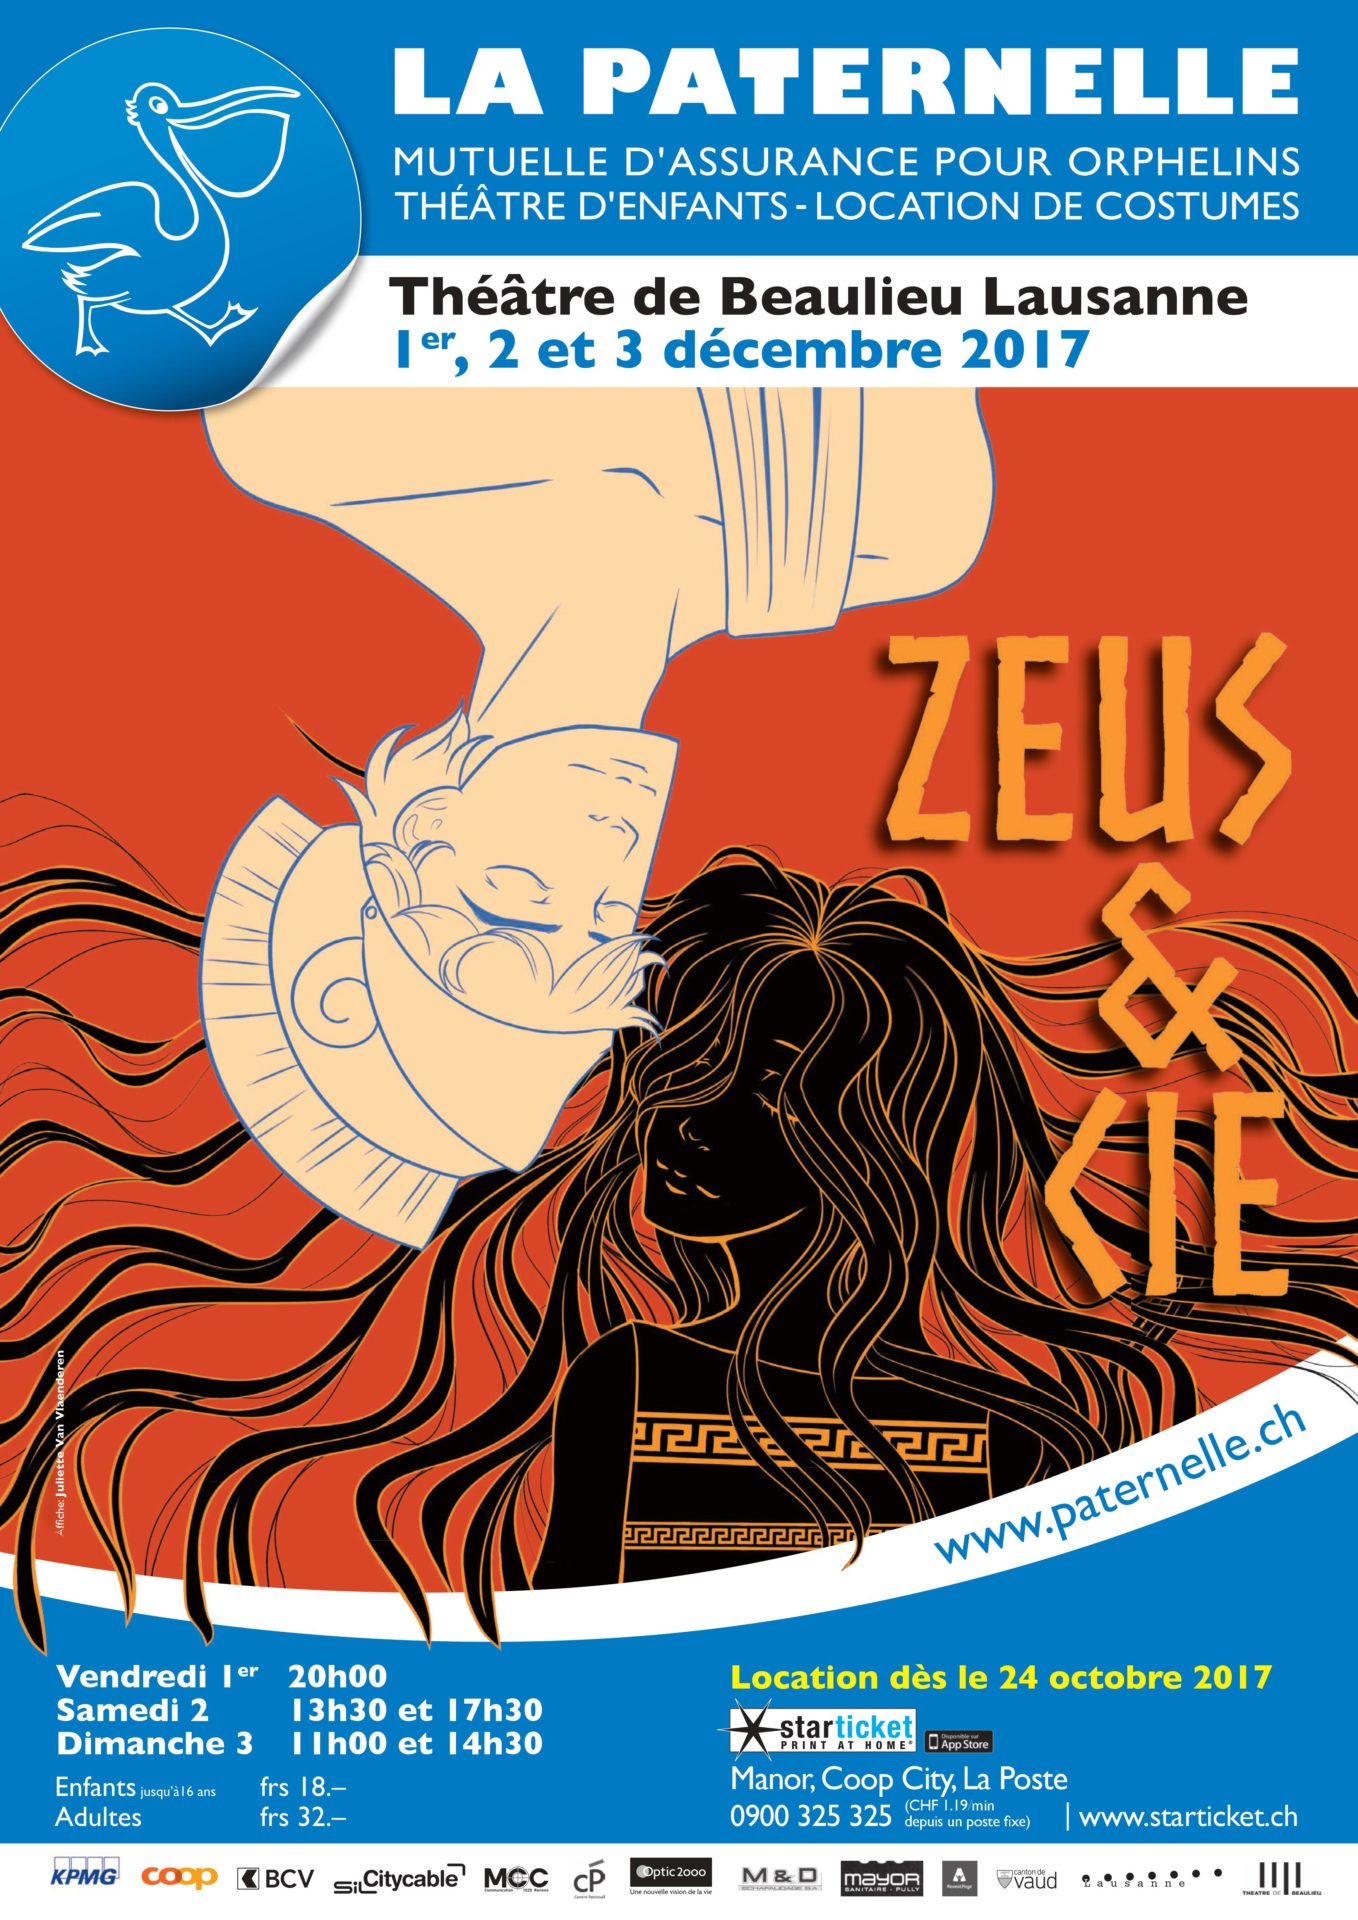 La Paternelle 2017
Zeus and Cie